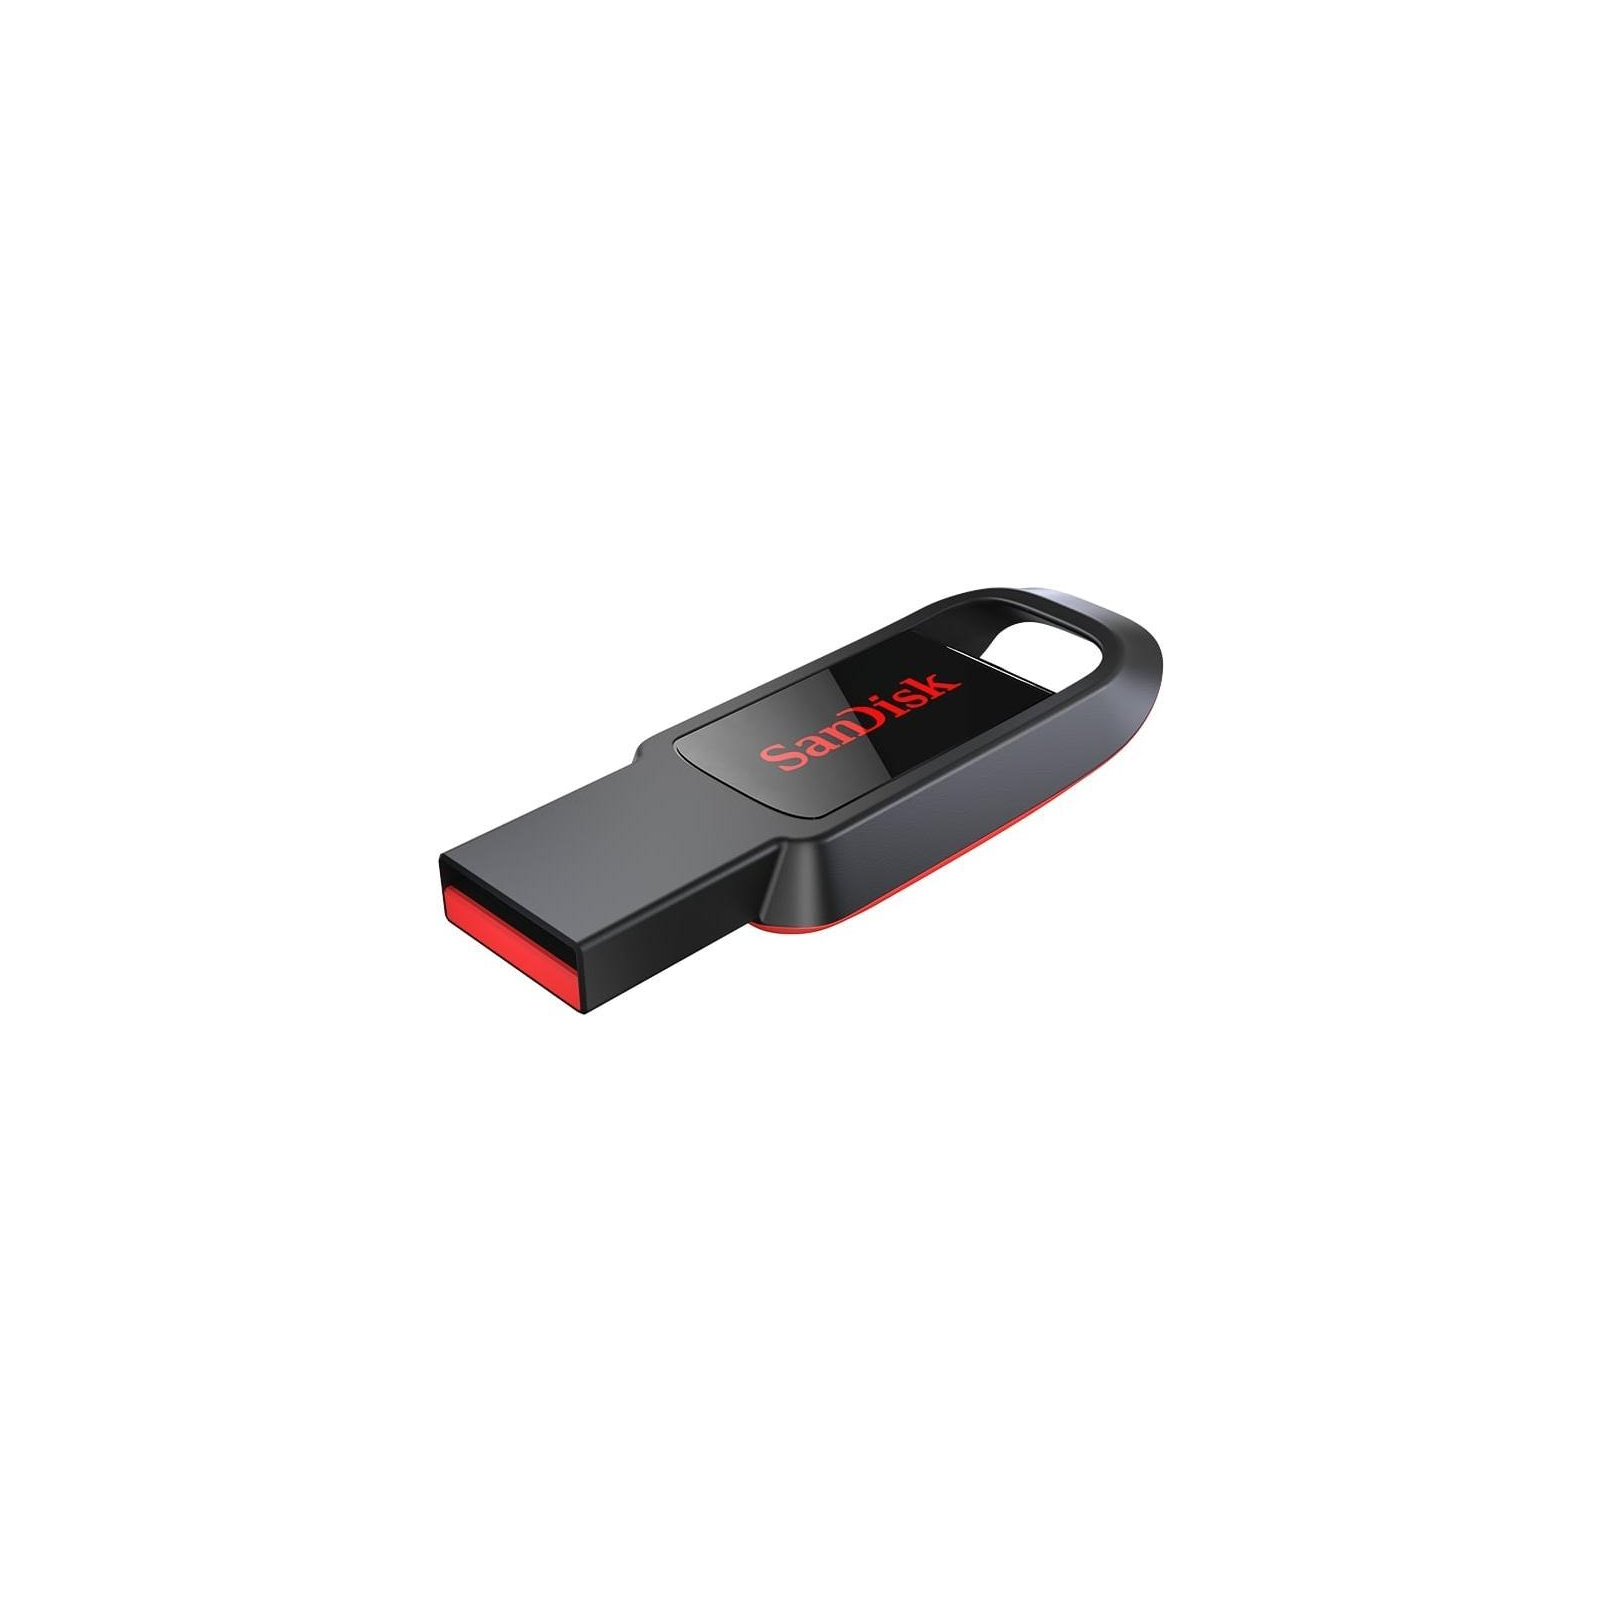 USB флеш накопичувач SanDisk 16GB Cruzer Spark USB 2.0 (SDCZ61-016G-G35) зображення 3